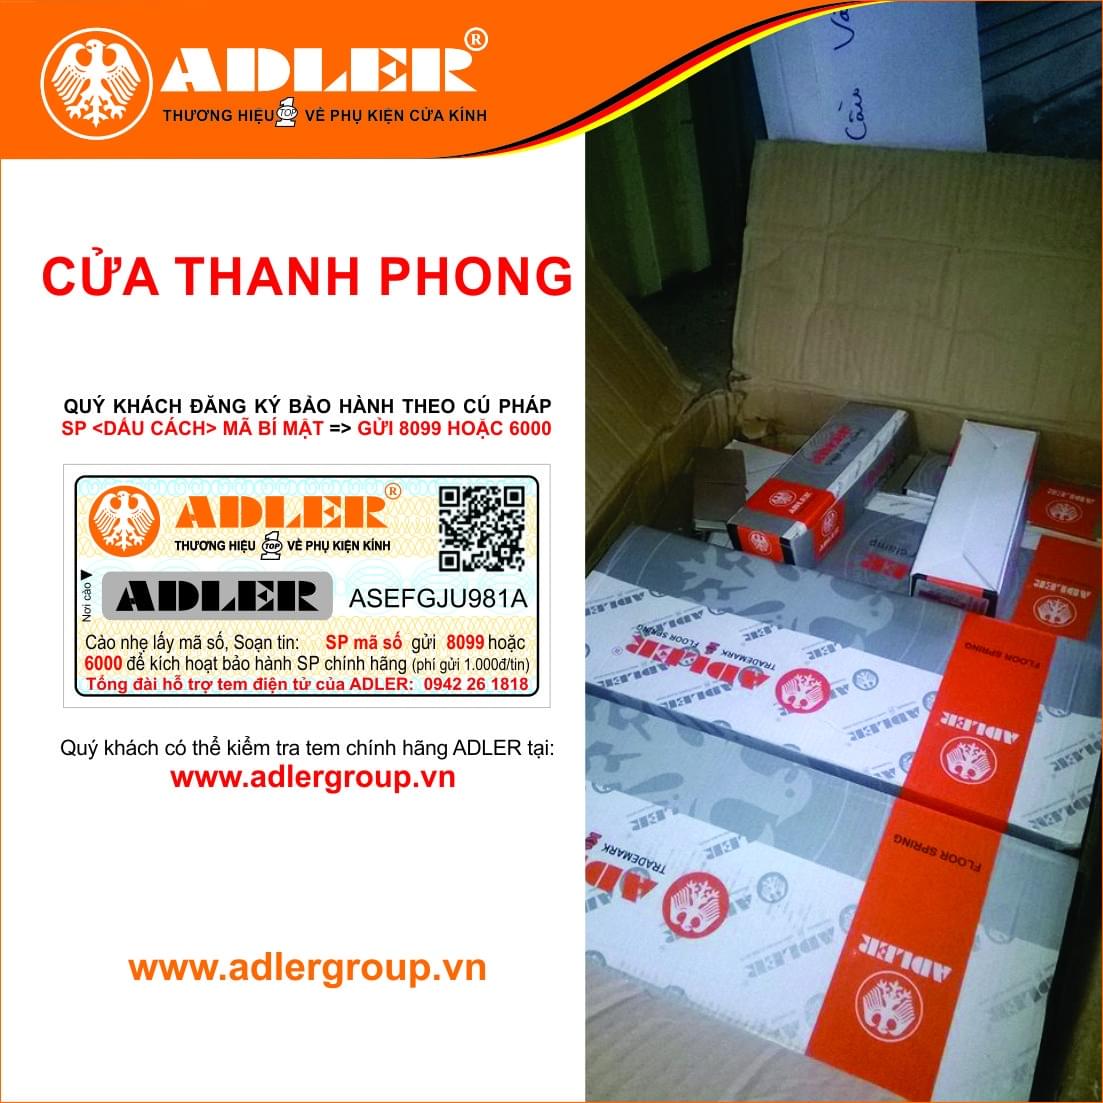 Cửa Thanh Phong luôn lắp đặt đồng bộ sản phẩm ADLER